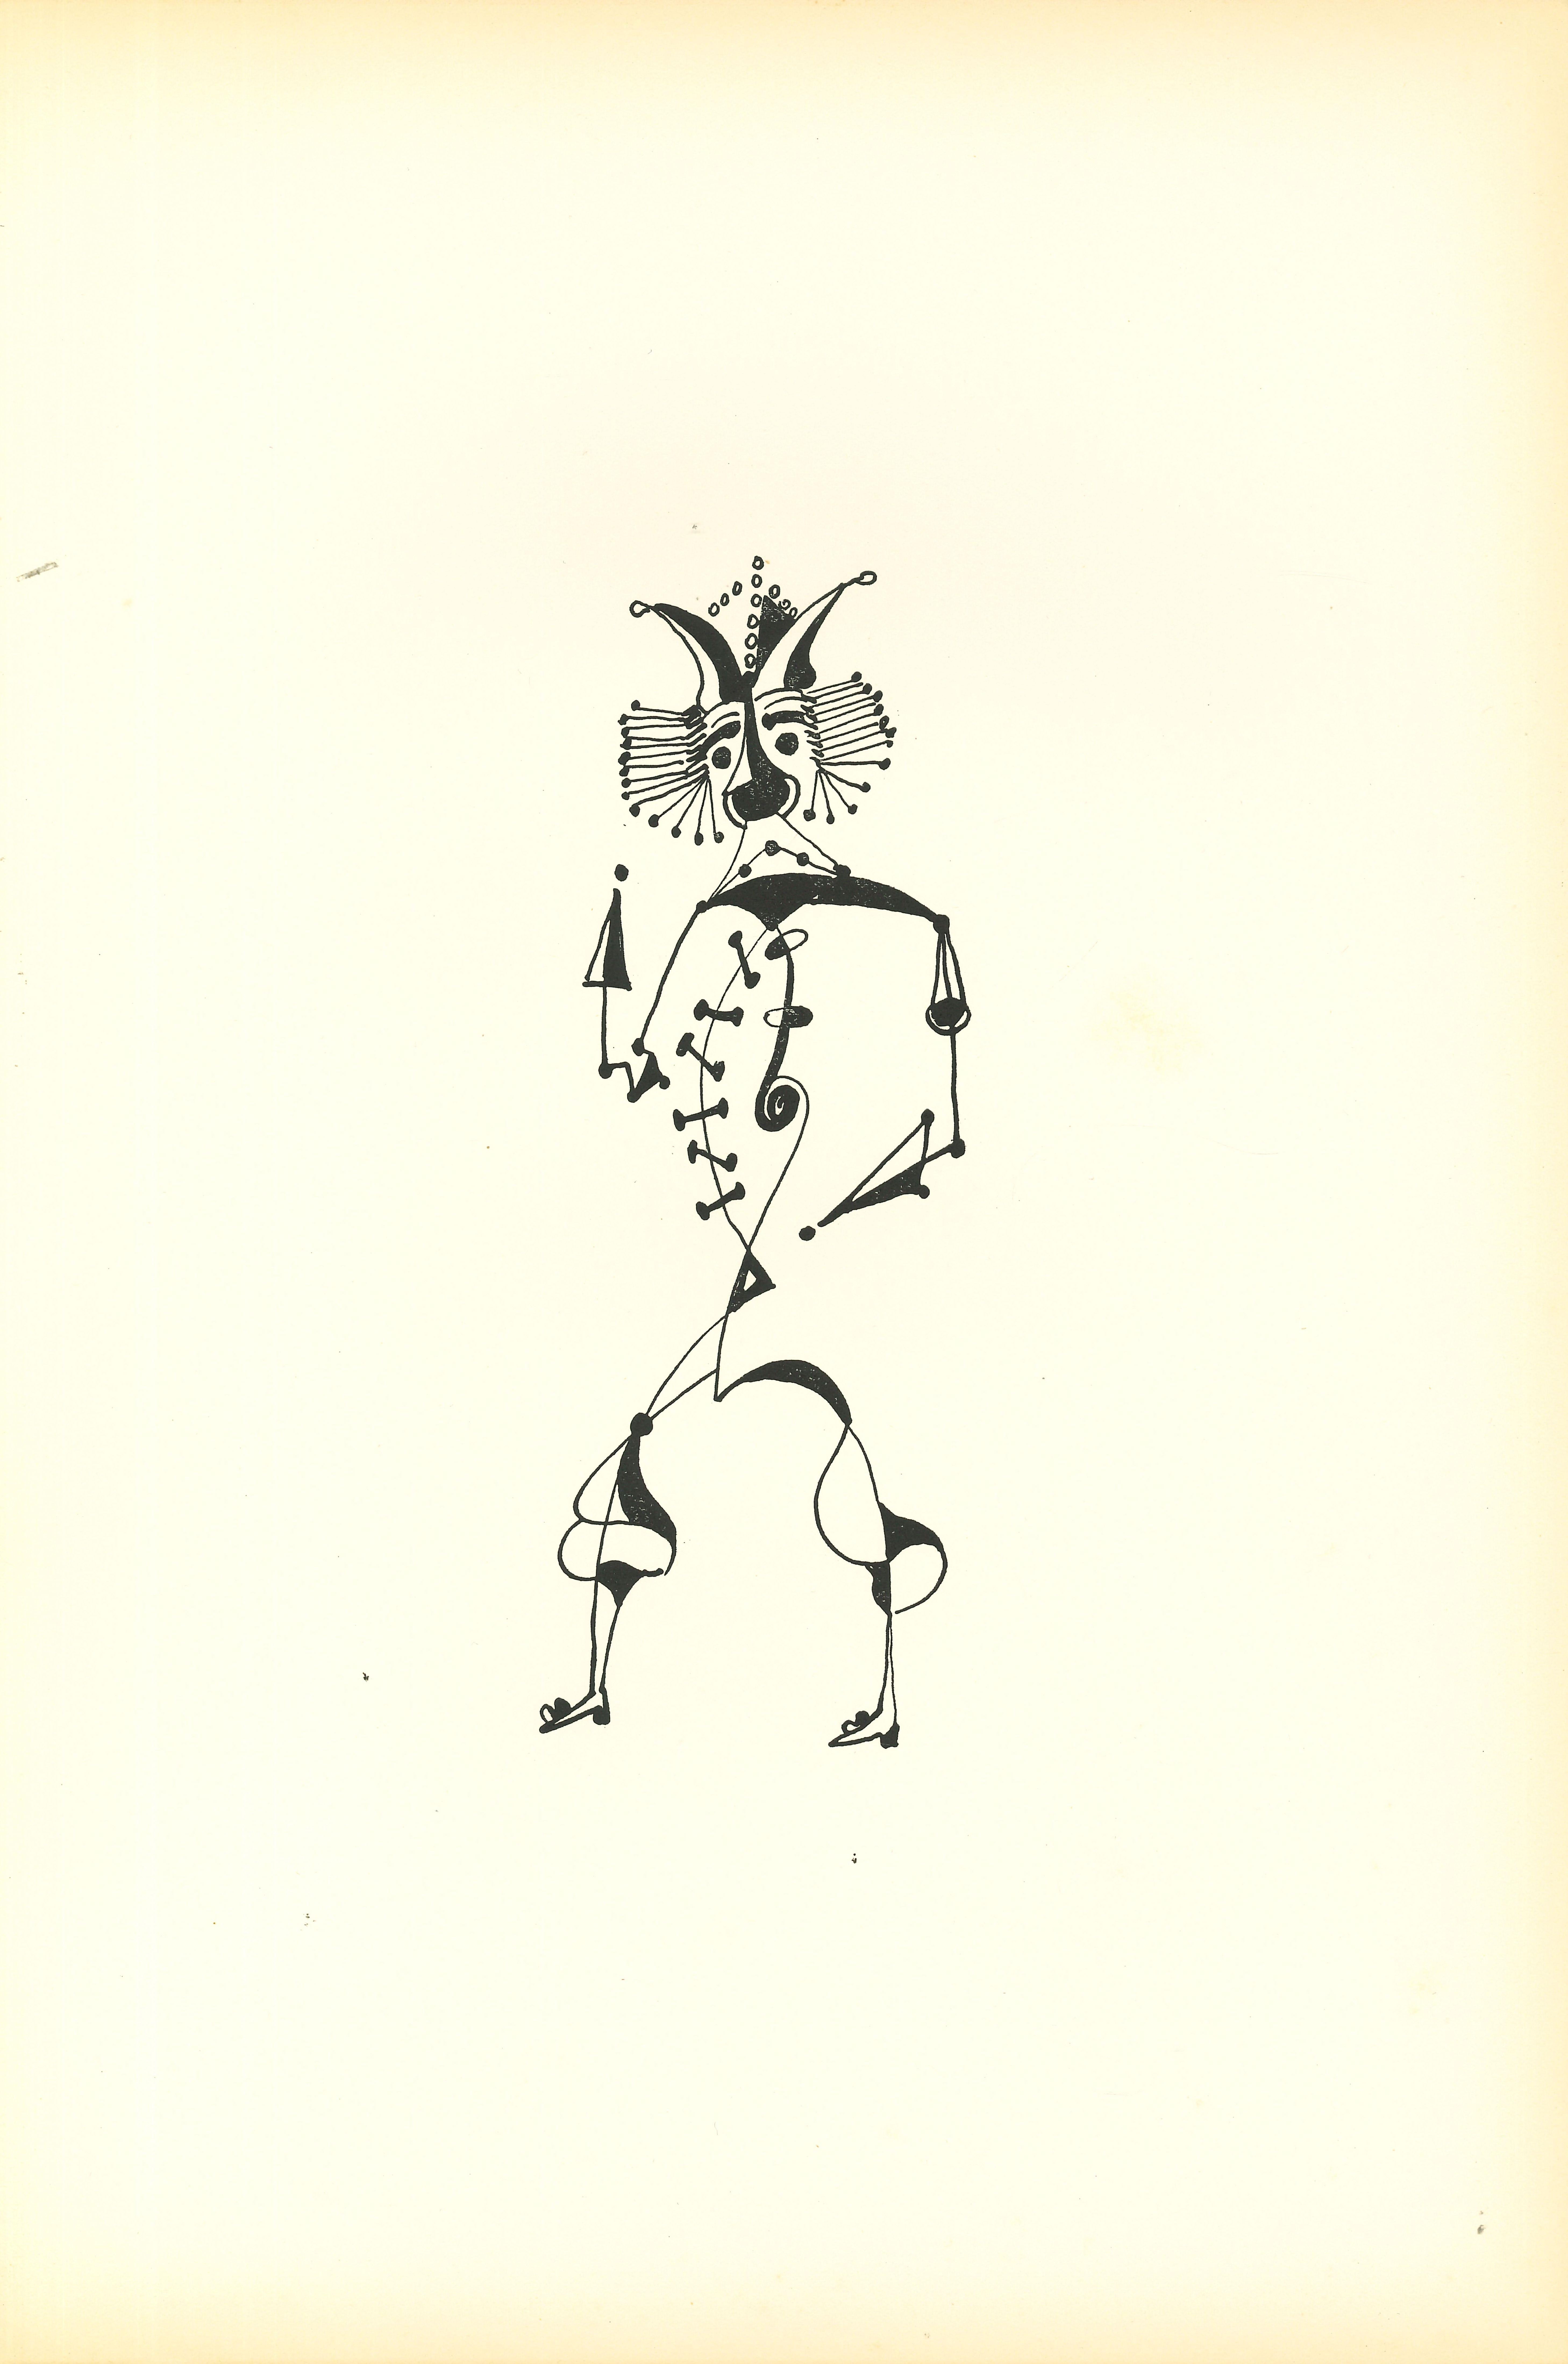 Composition Of Diodora est une litographie originale réalisée par Bruno Capacci en 1950.

L'œuvre fait partie d'une édition en 500 exemplaires de "La nef d'argent" Paris.

En bon état, sans signature.

Bruno CAPACCI (1906-1996) est un artiste né/en